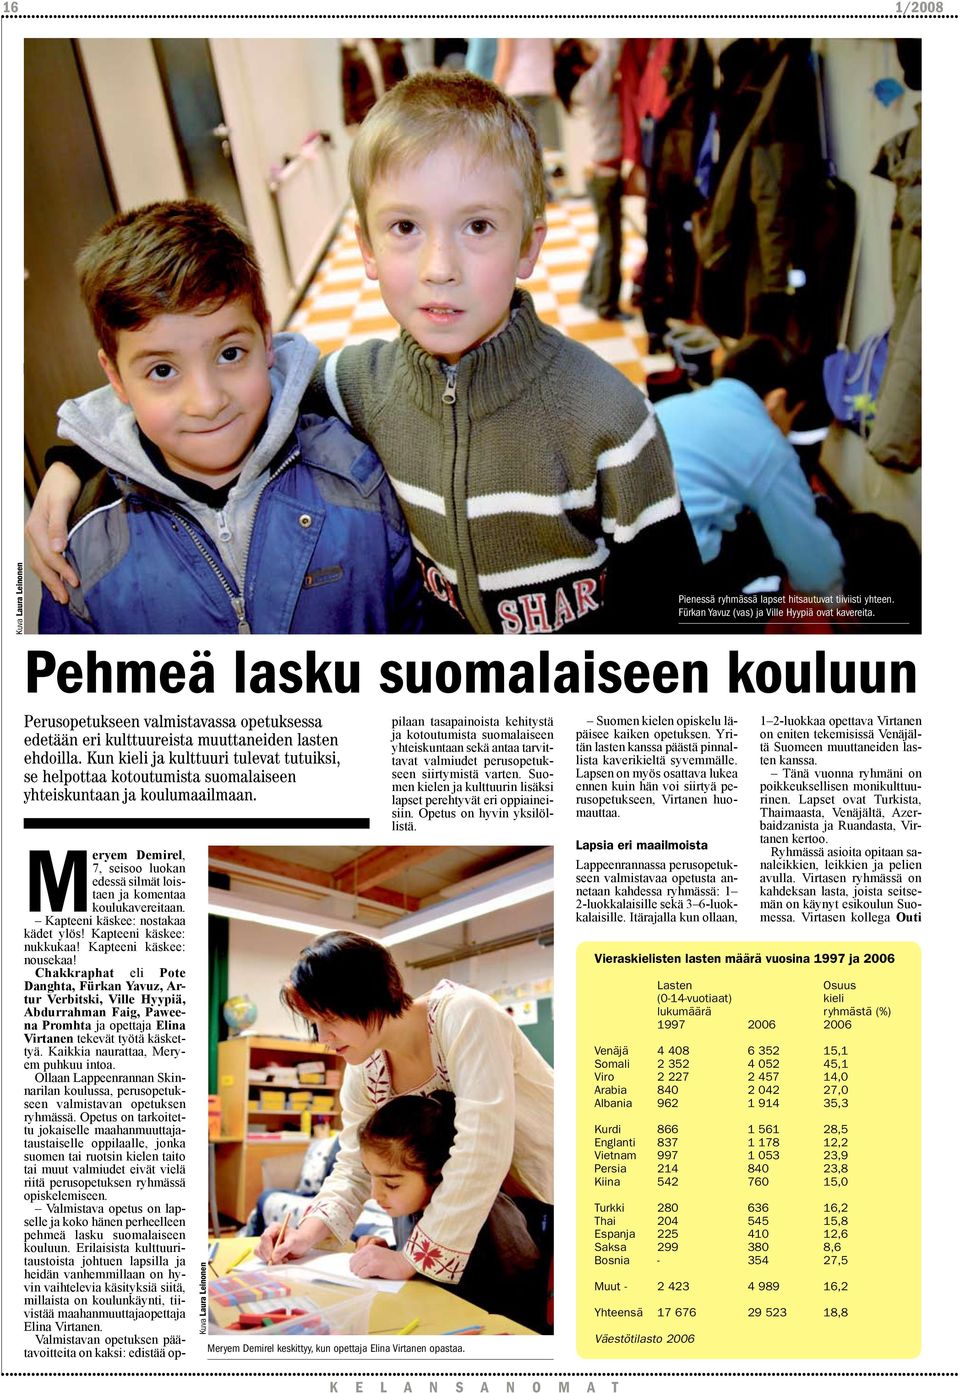 Kun kieli ja kulttuuri tulevat tutuiksi, se helpottaa kotoutumista suomalaiseen yhteiskuntaan ja koulumaailmaan. Meryem Demirel, 7, seisoo luokan edessä silmät loistaen ja komentaa koulukavereitaan.